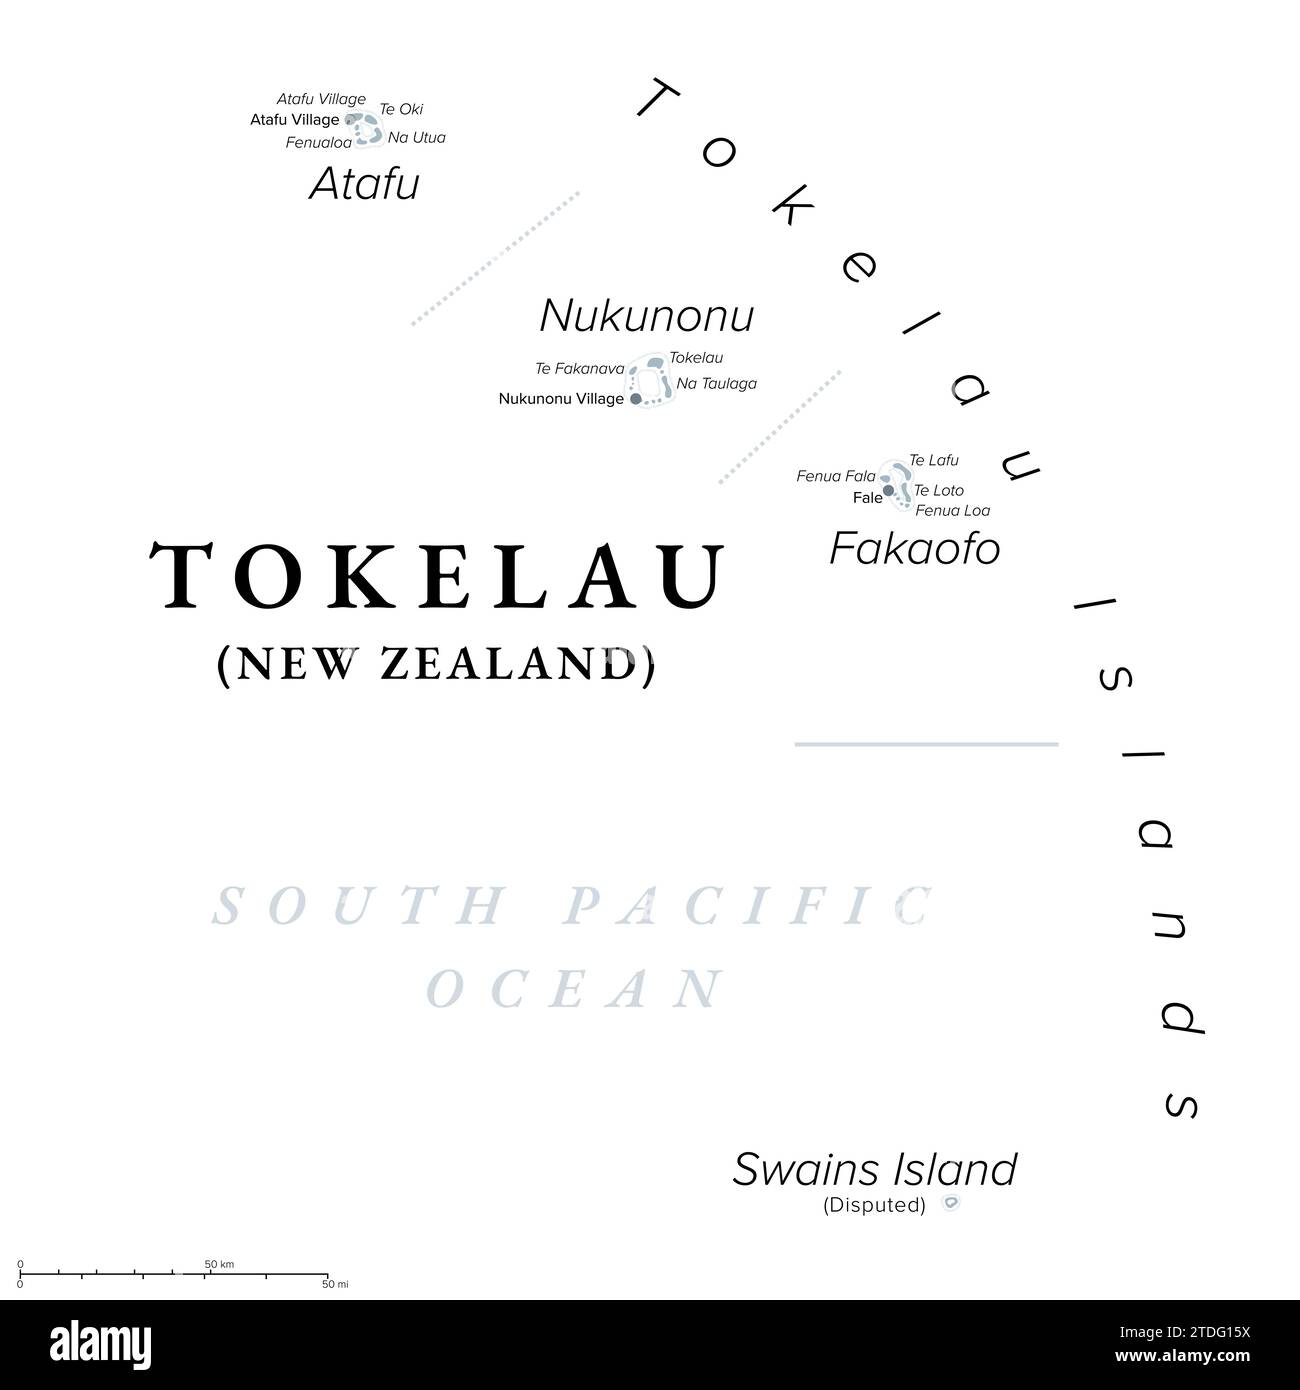 Tokelau, territorio dipendente della nuova Zelanda, mappa politica. Arcipelago del Pacifico meridionale costituito dagli atolli corallini tropicali Atafu, Nukunonu e Fakaofo. Foto Stock